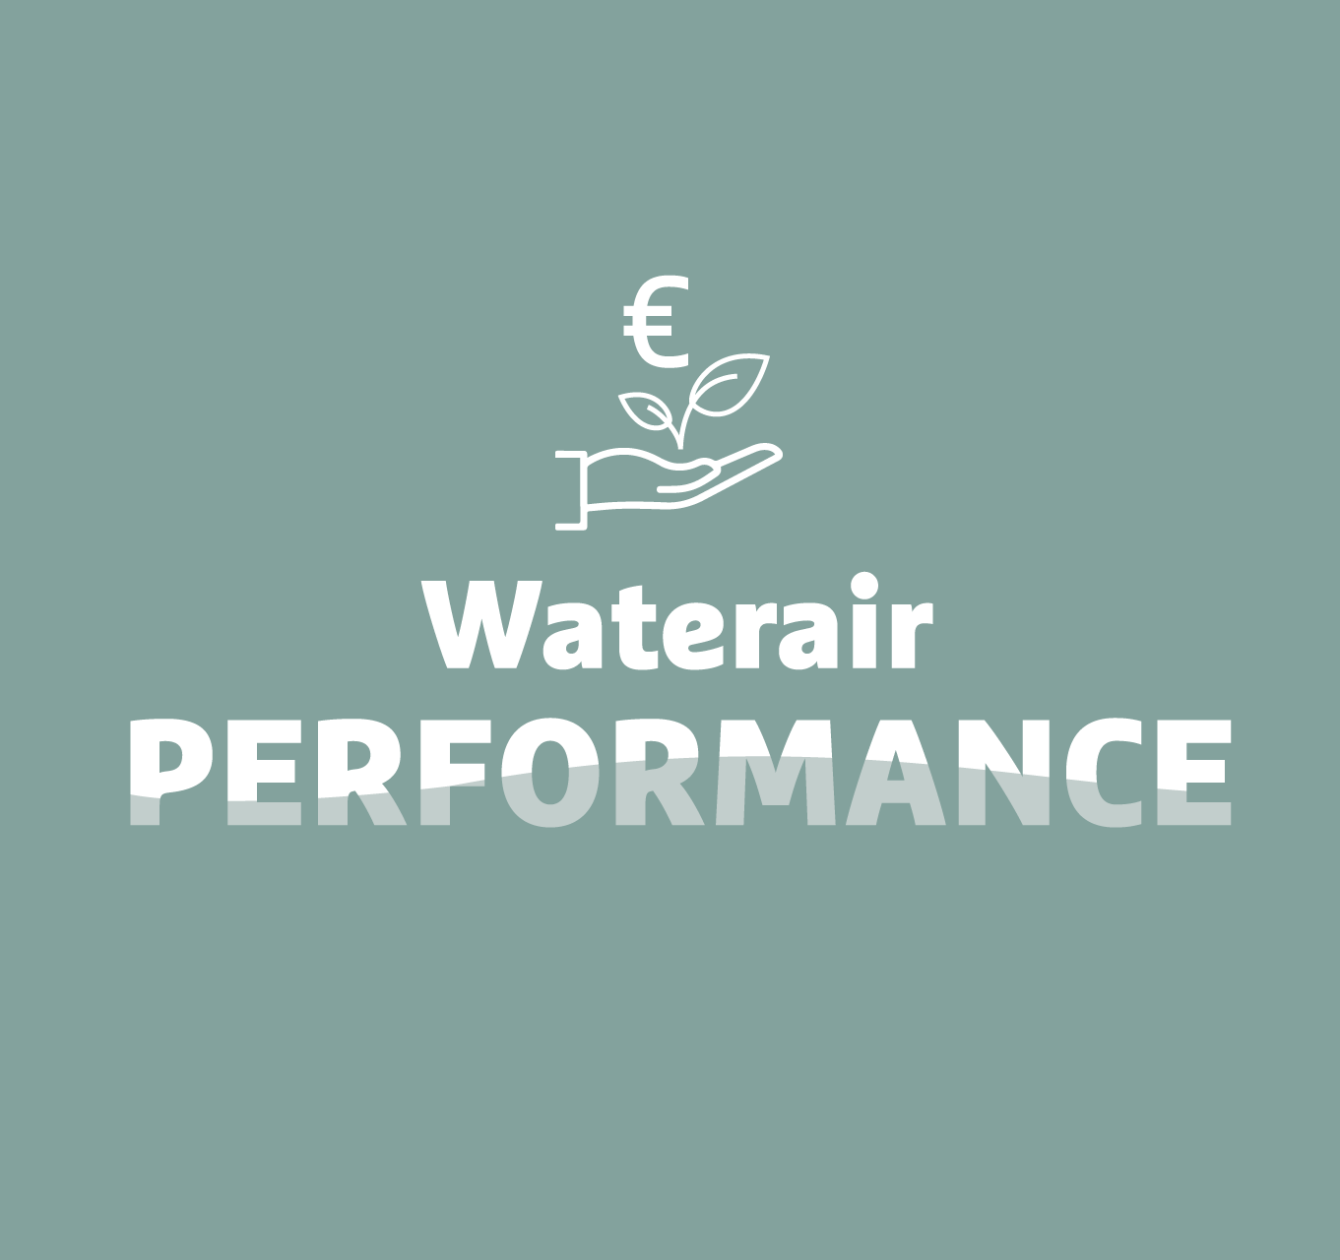 Waterair Performance: gazdaságos és környezettudatos medence